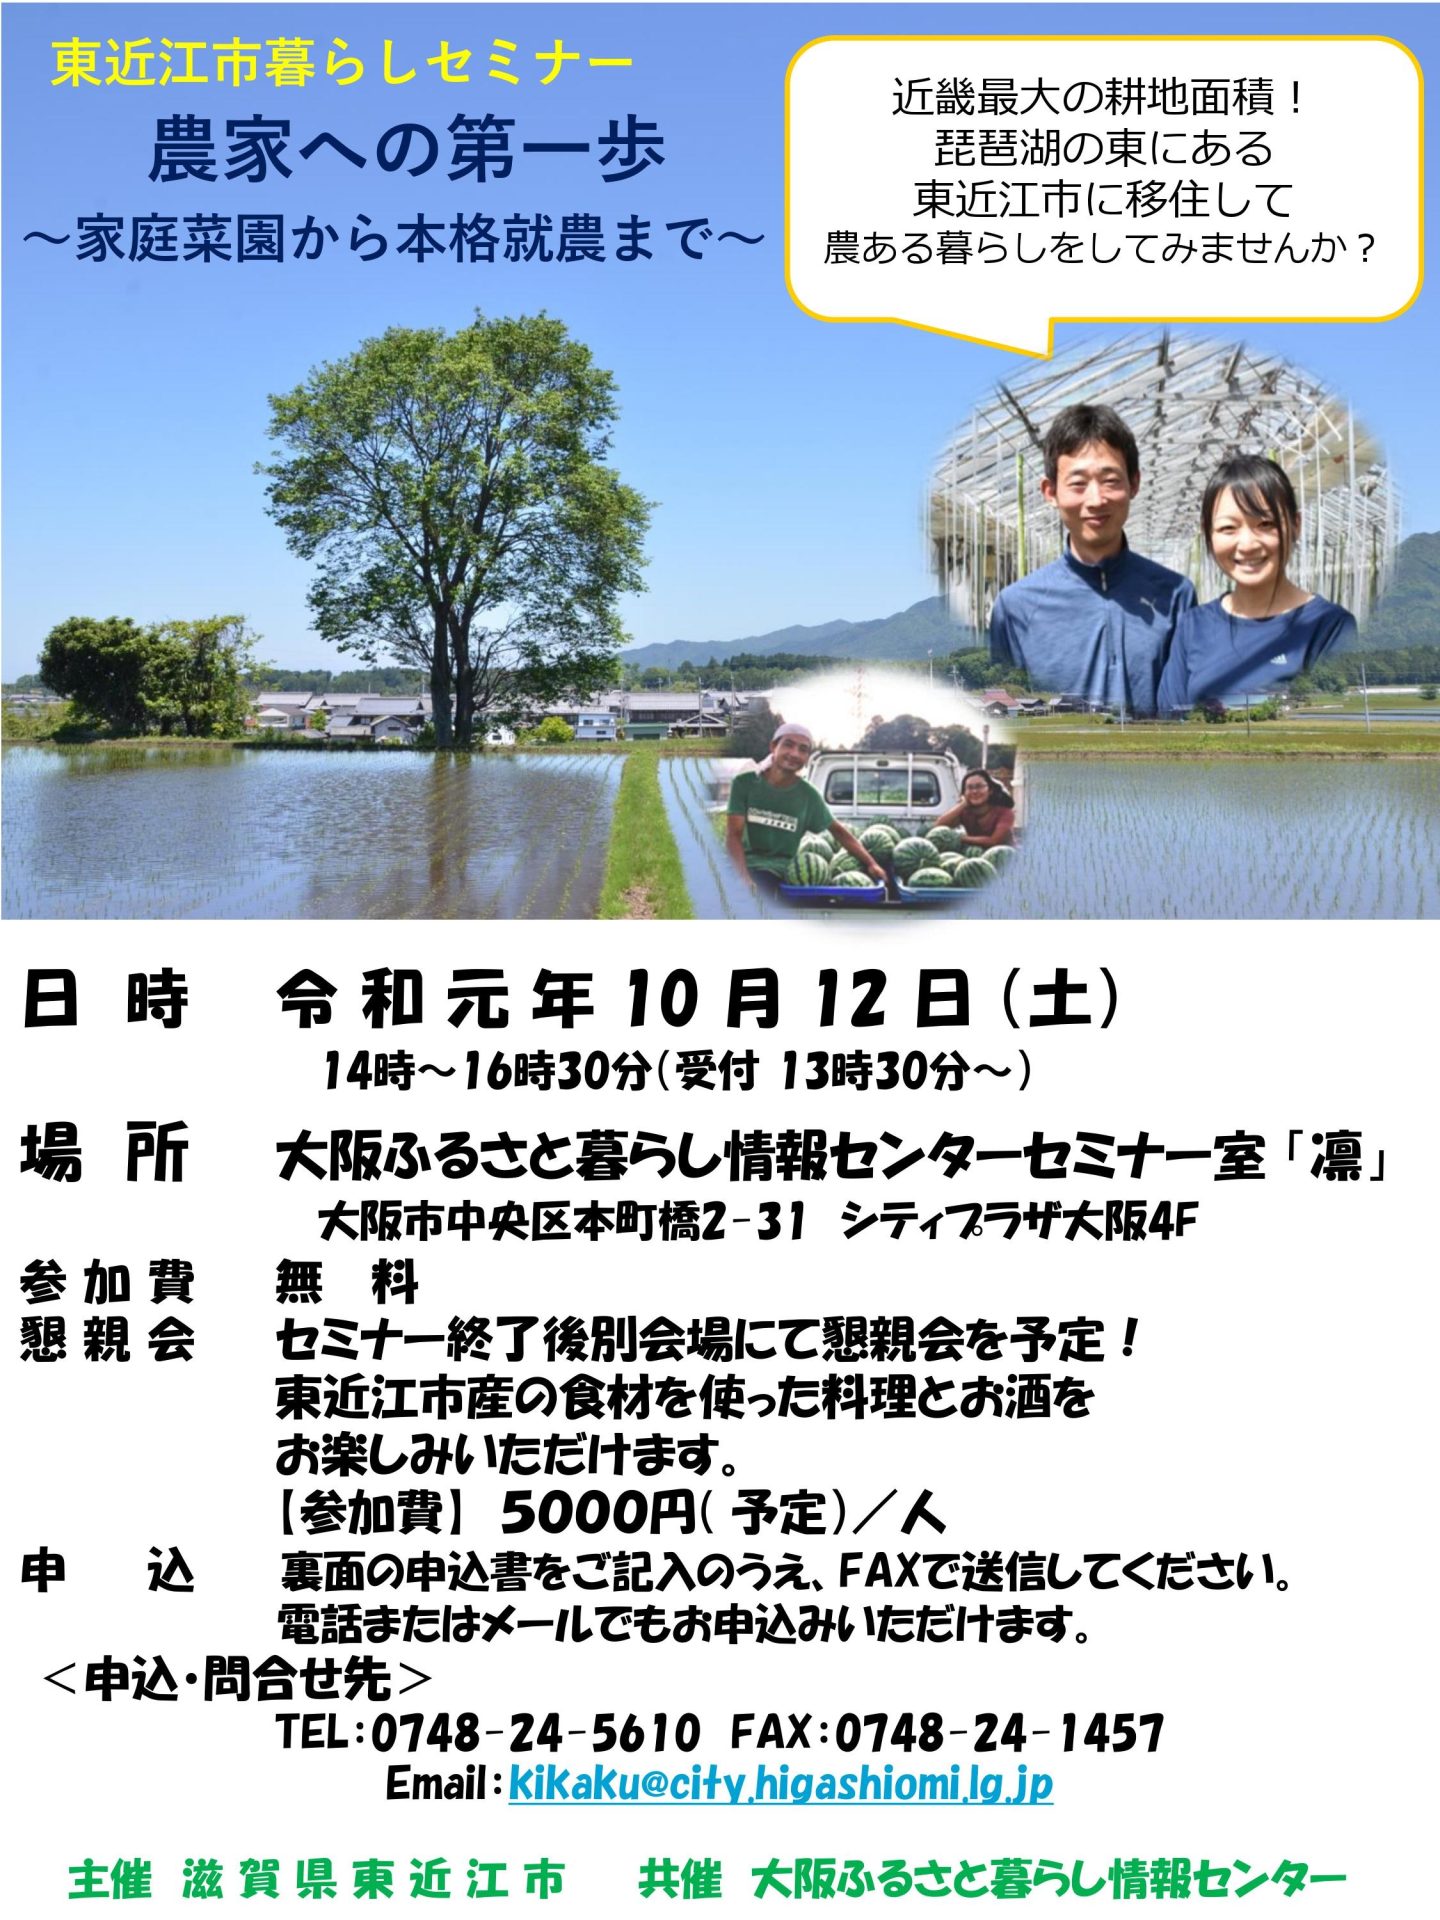 東近江市暮らしセミナー | 移住関連イベント情報